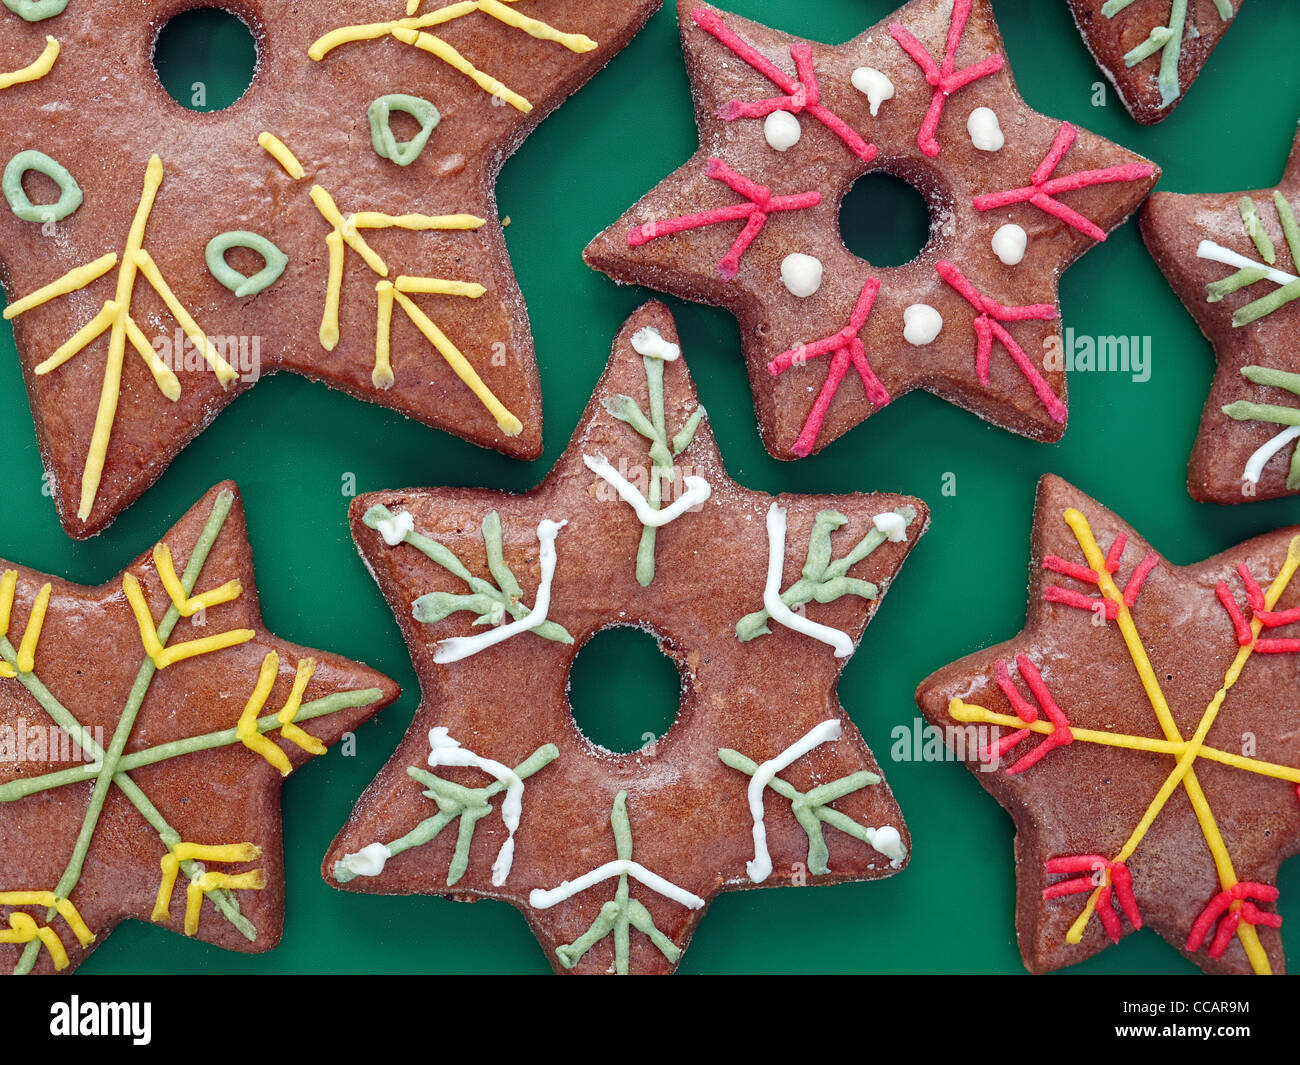 Saison en forme d'étoiles gingerbread cookies shot de dessus sur fond vert Banque D'Images